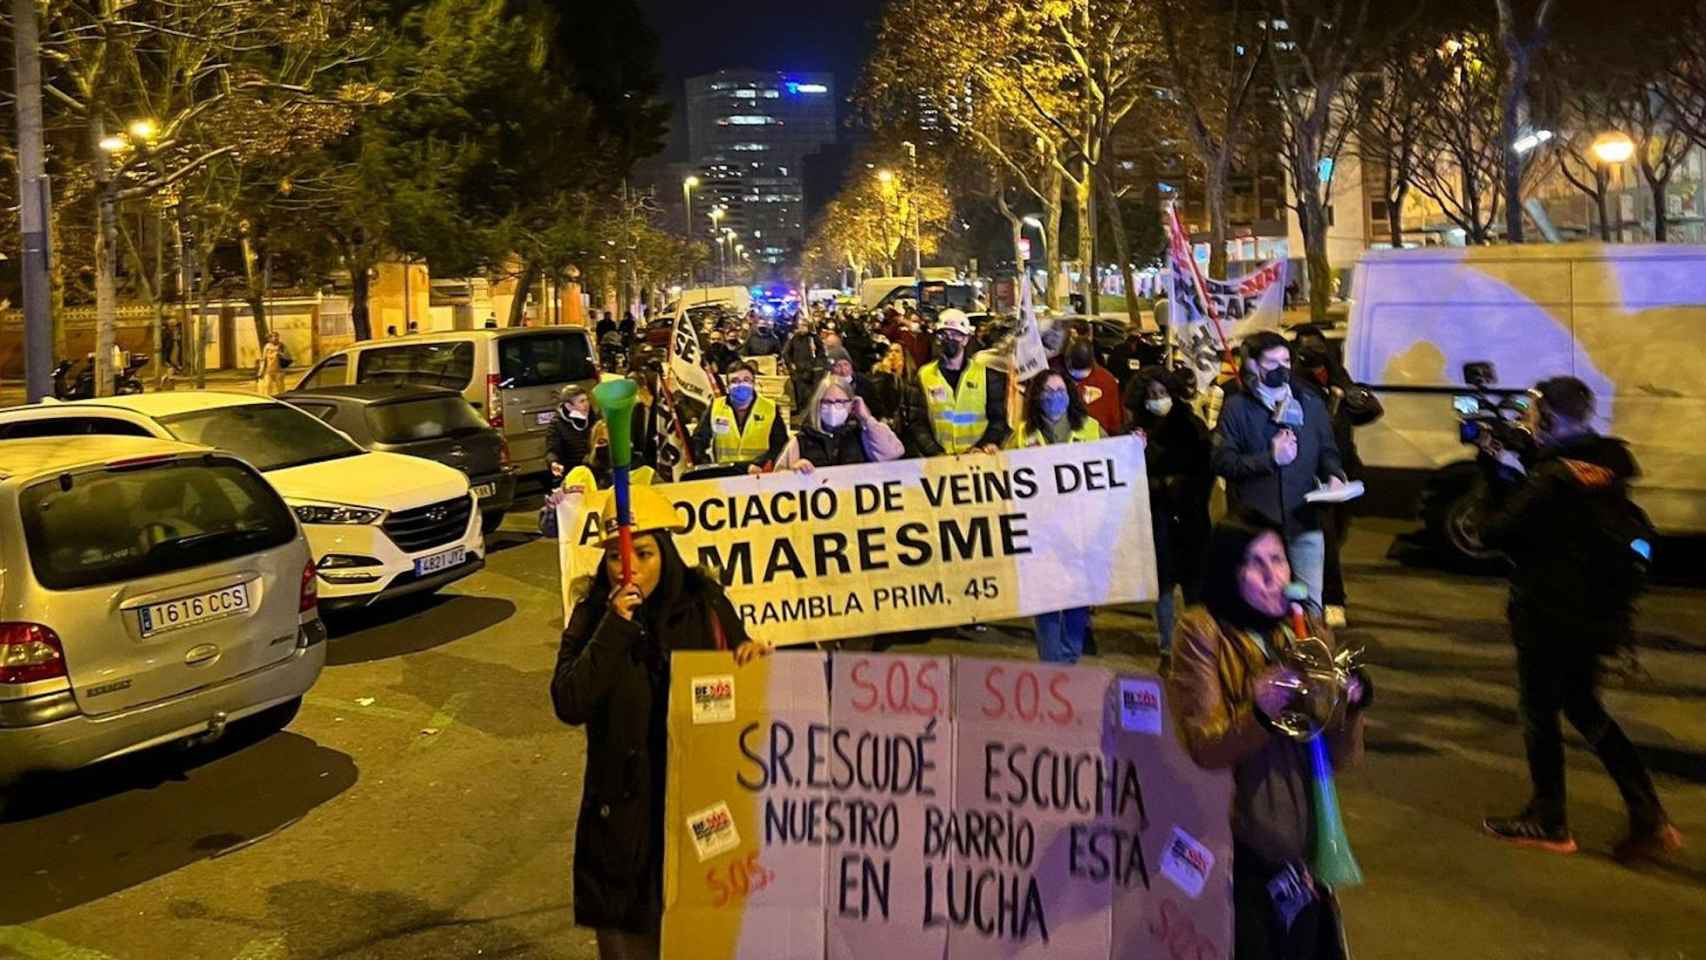 Asistentes a la manifestación en el barrio de El Besòs i el Maresme, este sábado / AVV MARESME